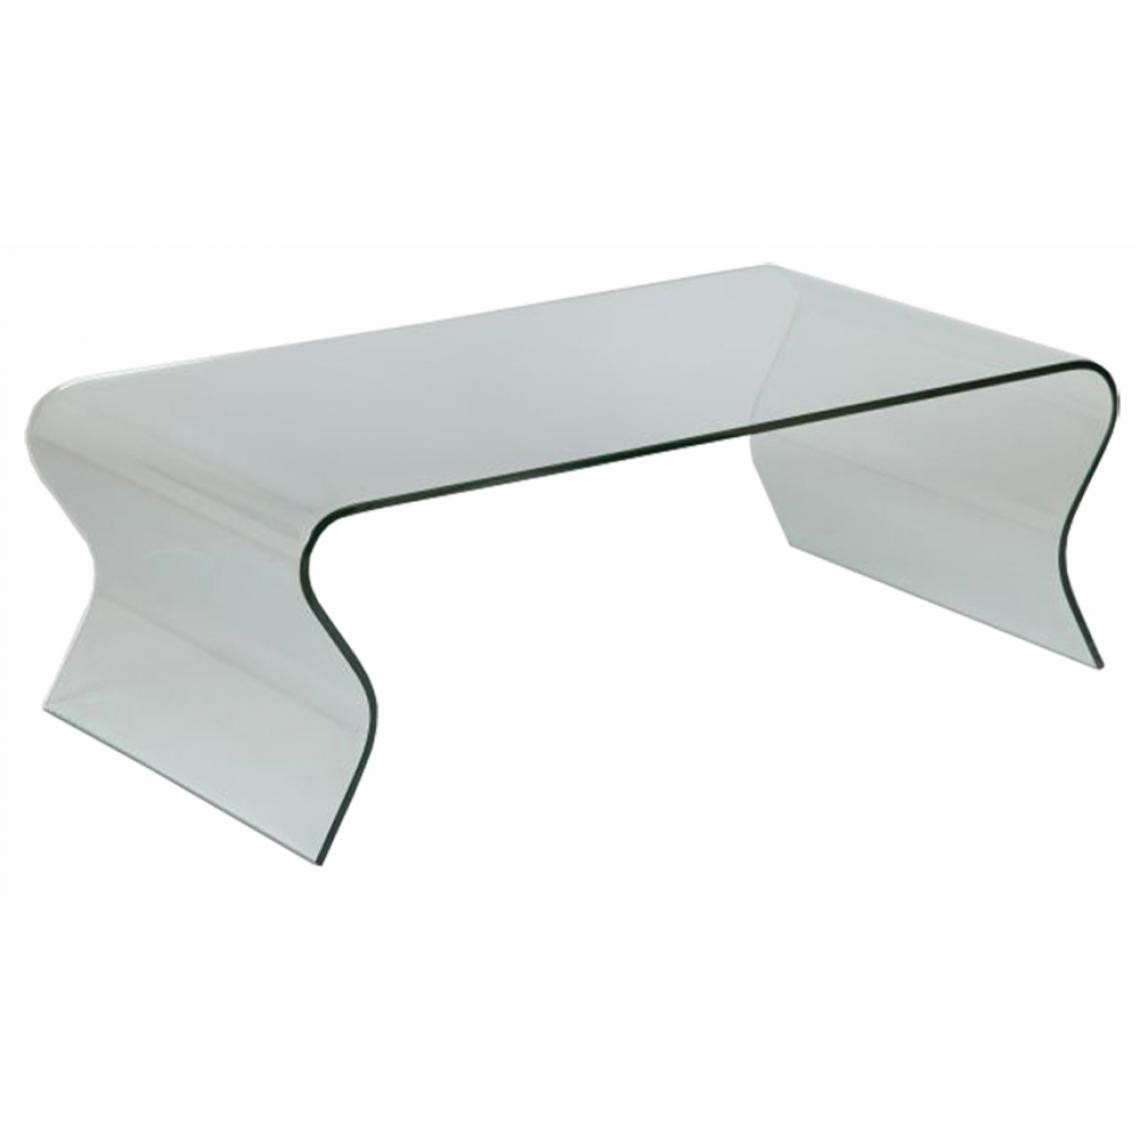 Pegane - Table basse en verre (vague), L.120 X P.65 X Ht.42 cm - Tables basses